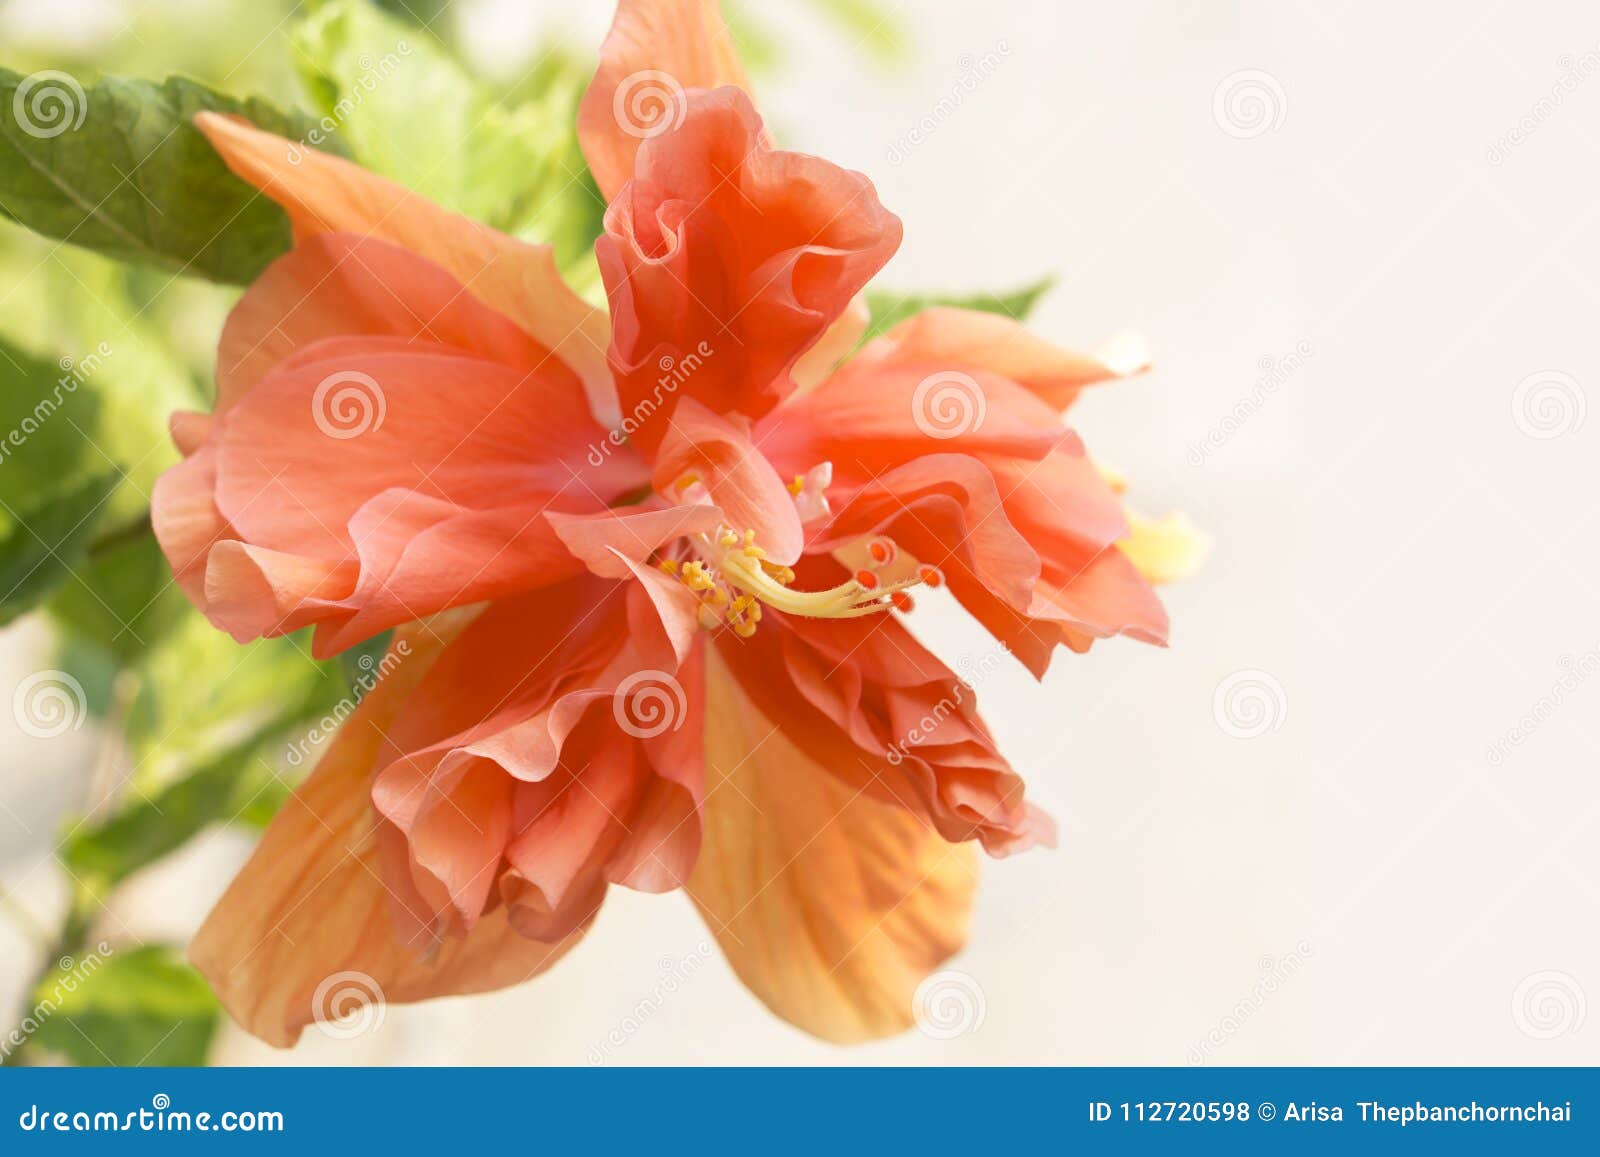 Resultado de imagen para La flor más hermosa de China ....imagen